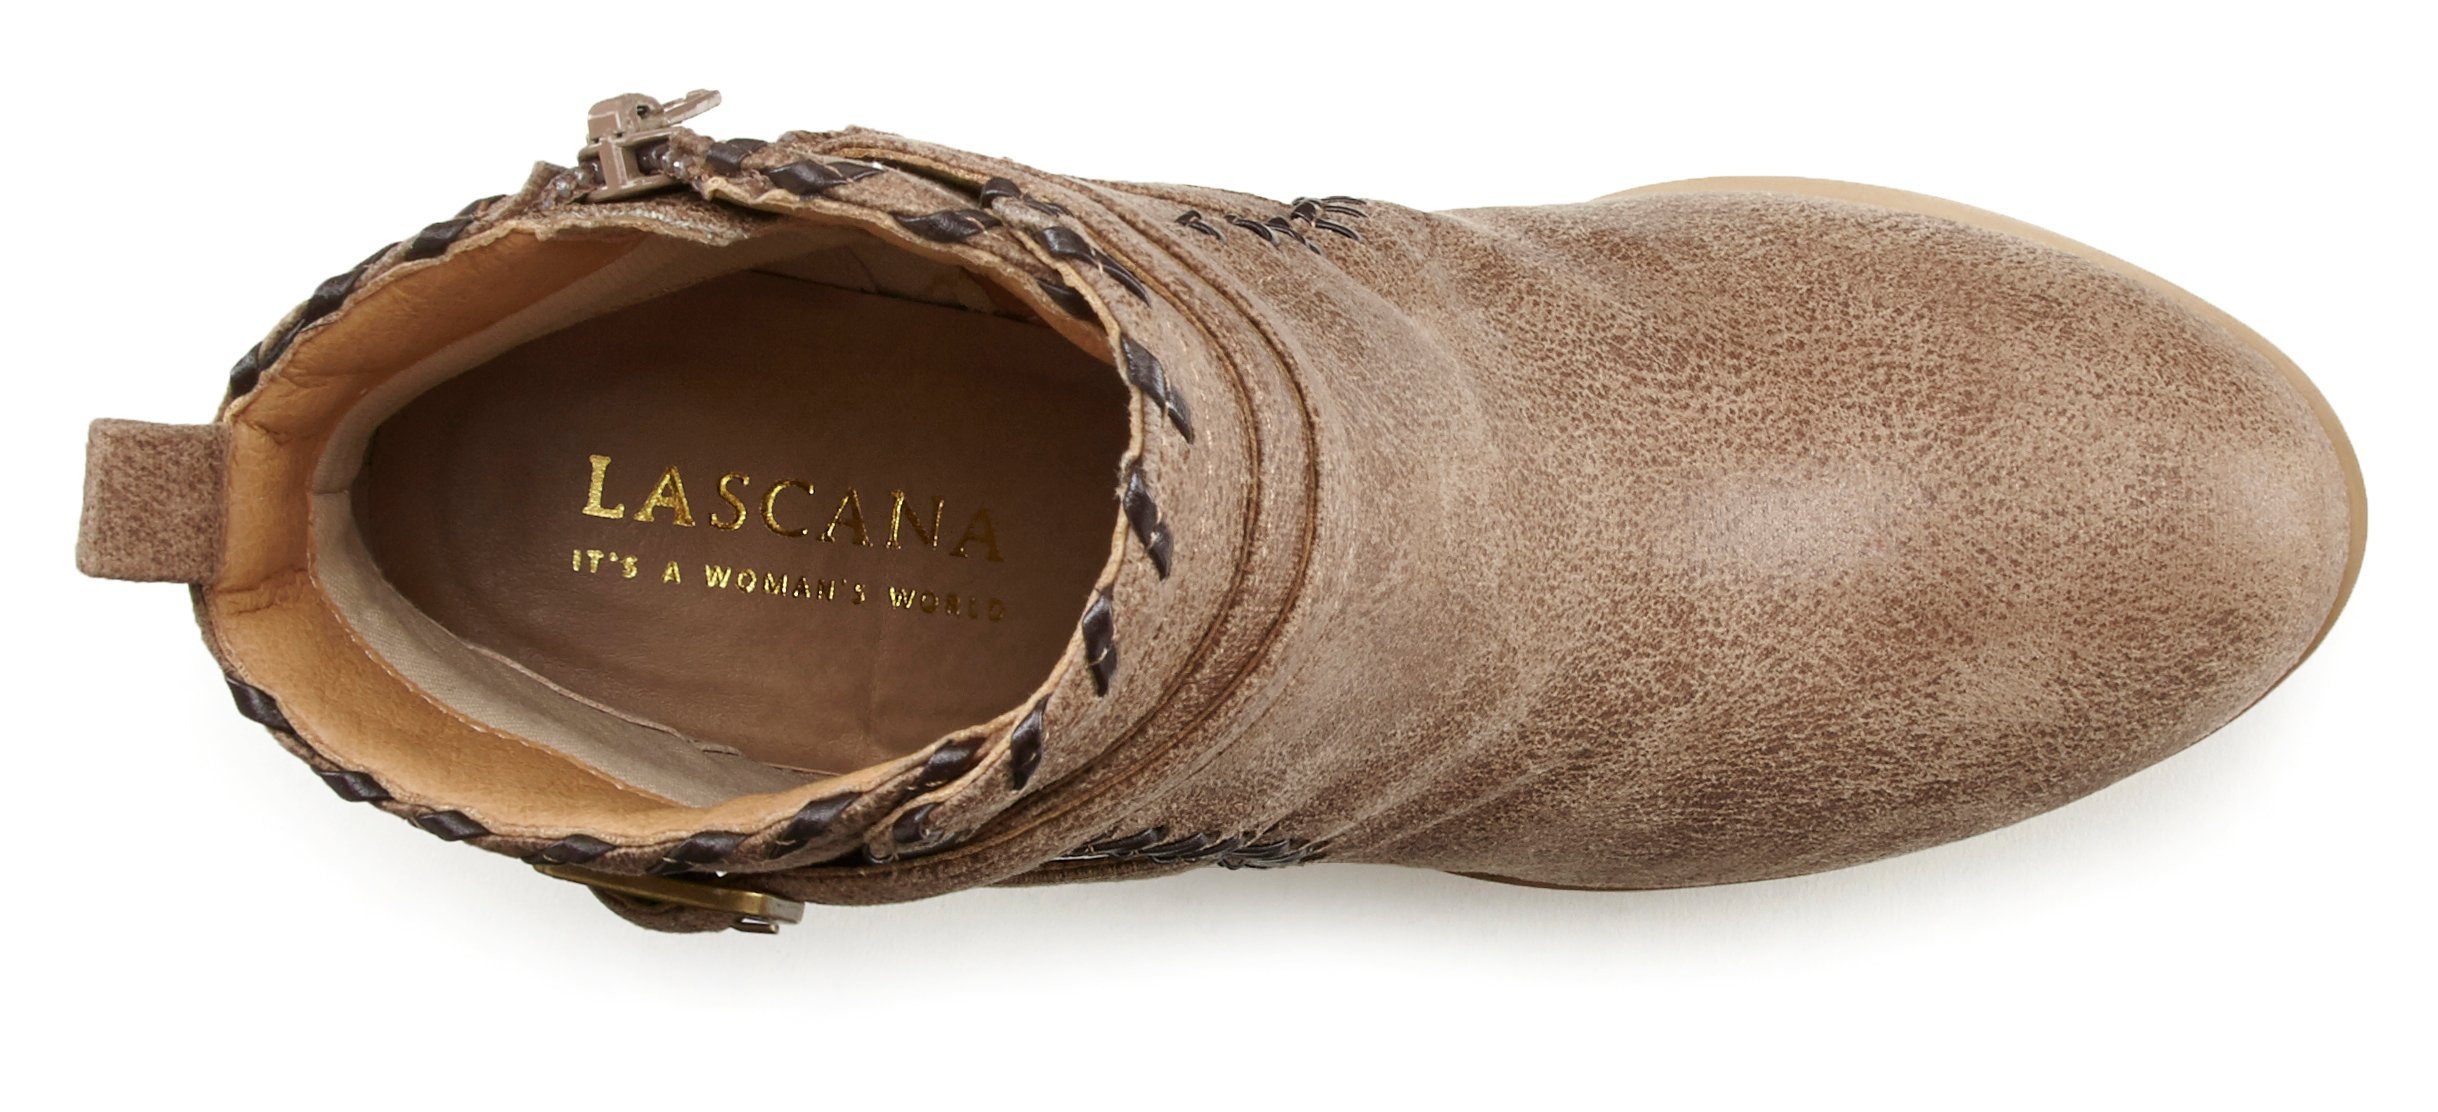 Vintage-Look im Boot, Stiefel mit LASCANA Ankle bequemen High-Heel-Stiefelette camelfarben Blockabsatz,